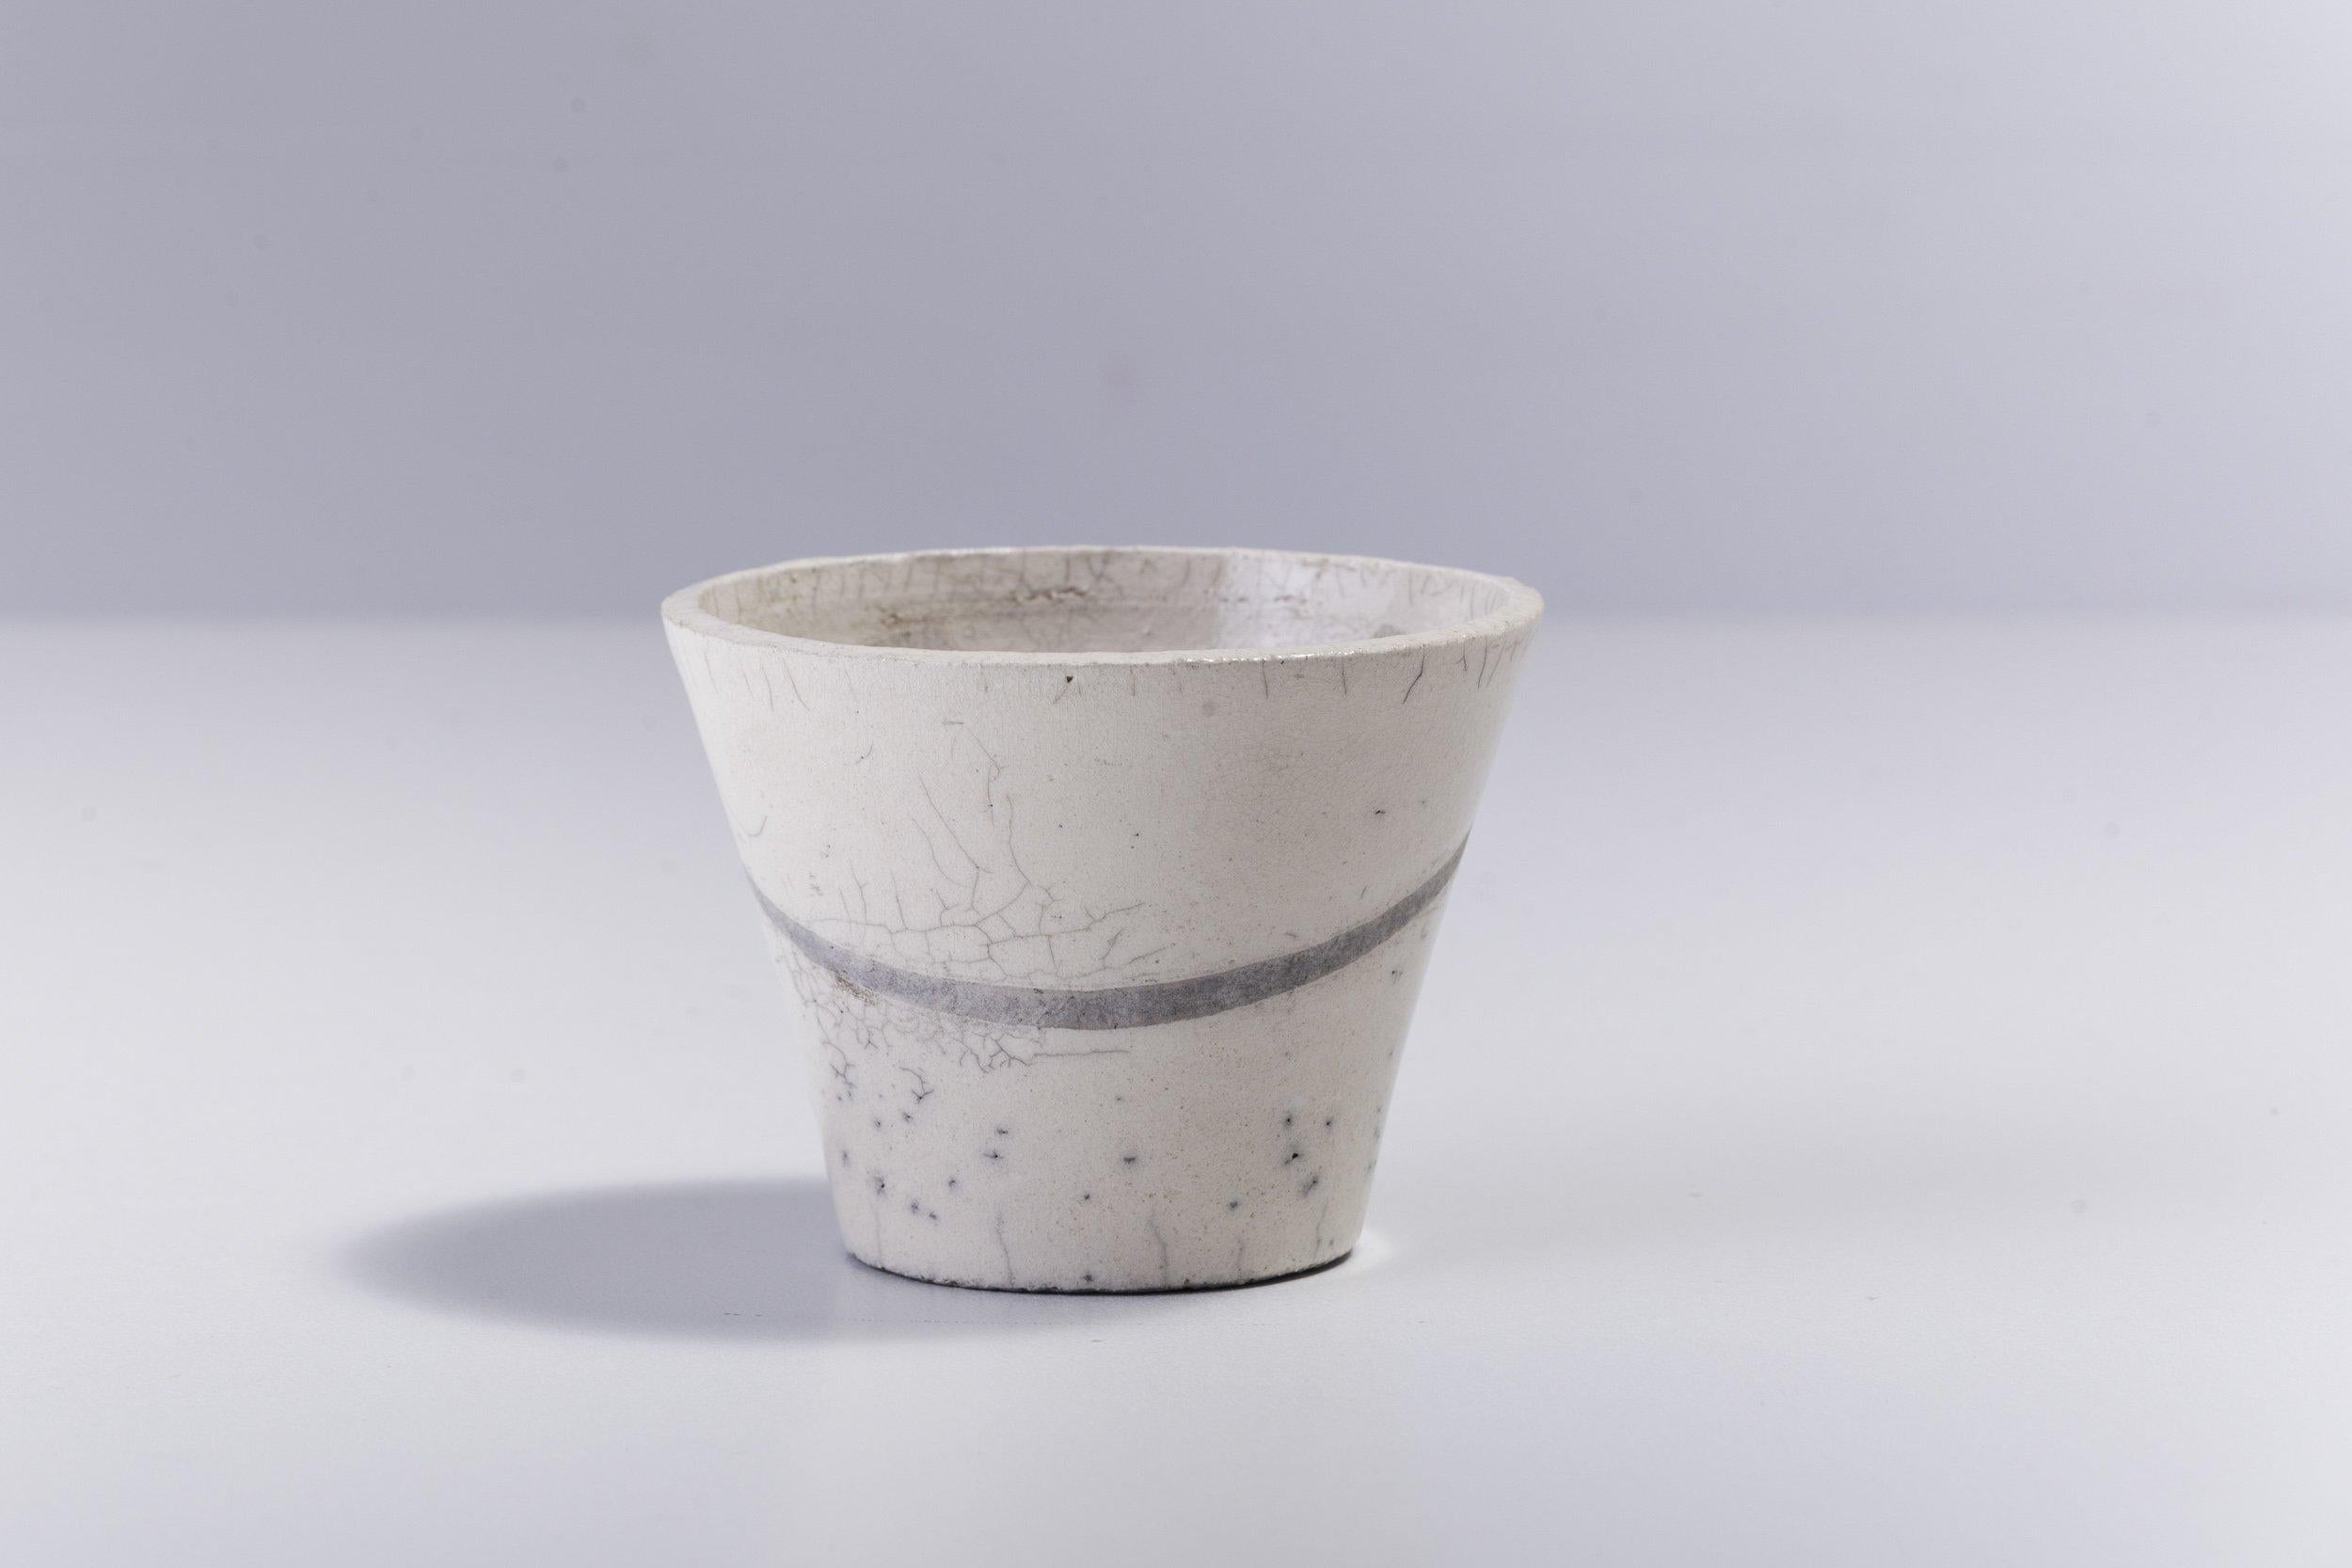 Fransen Chawan s Satz von 2 Schalen

Handgefertigt nach der Raku-Tradition, einer alten japanischen Technik, bei der die Töpfer die Keramik schnell erhitzen und abkühlen, um einzigartige Effekte zu erzielen, besticht dieses wunderschöne Set aus